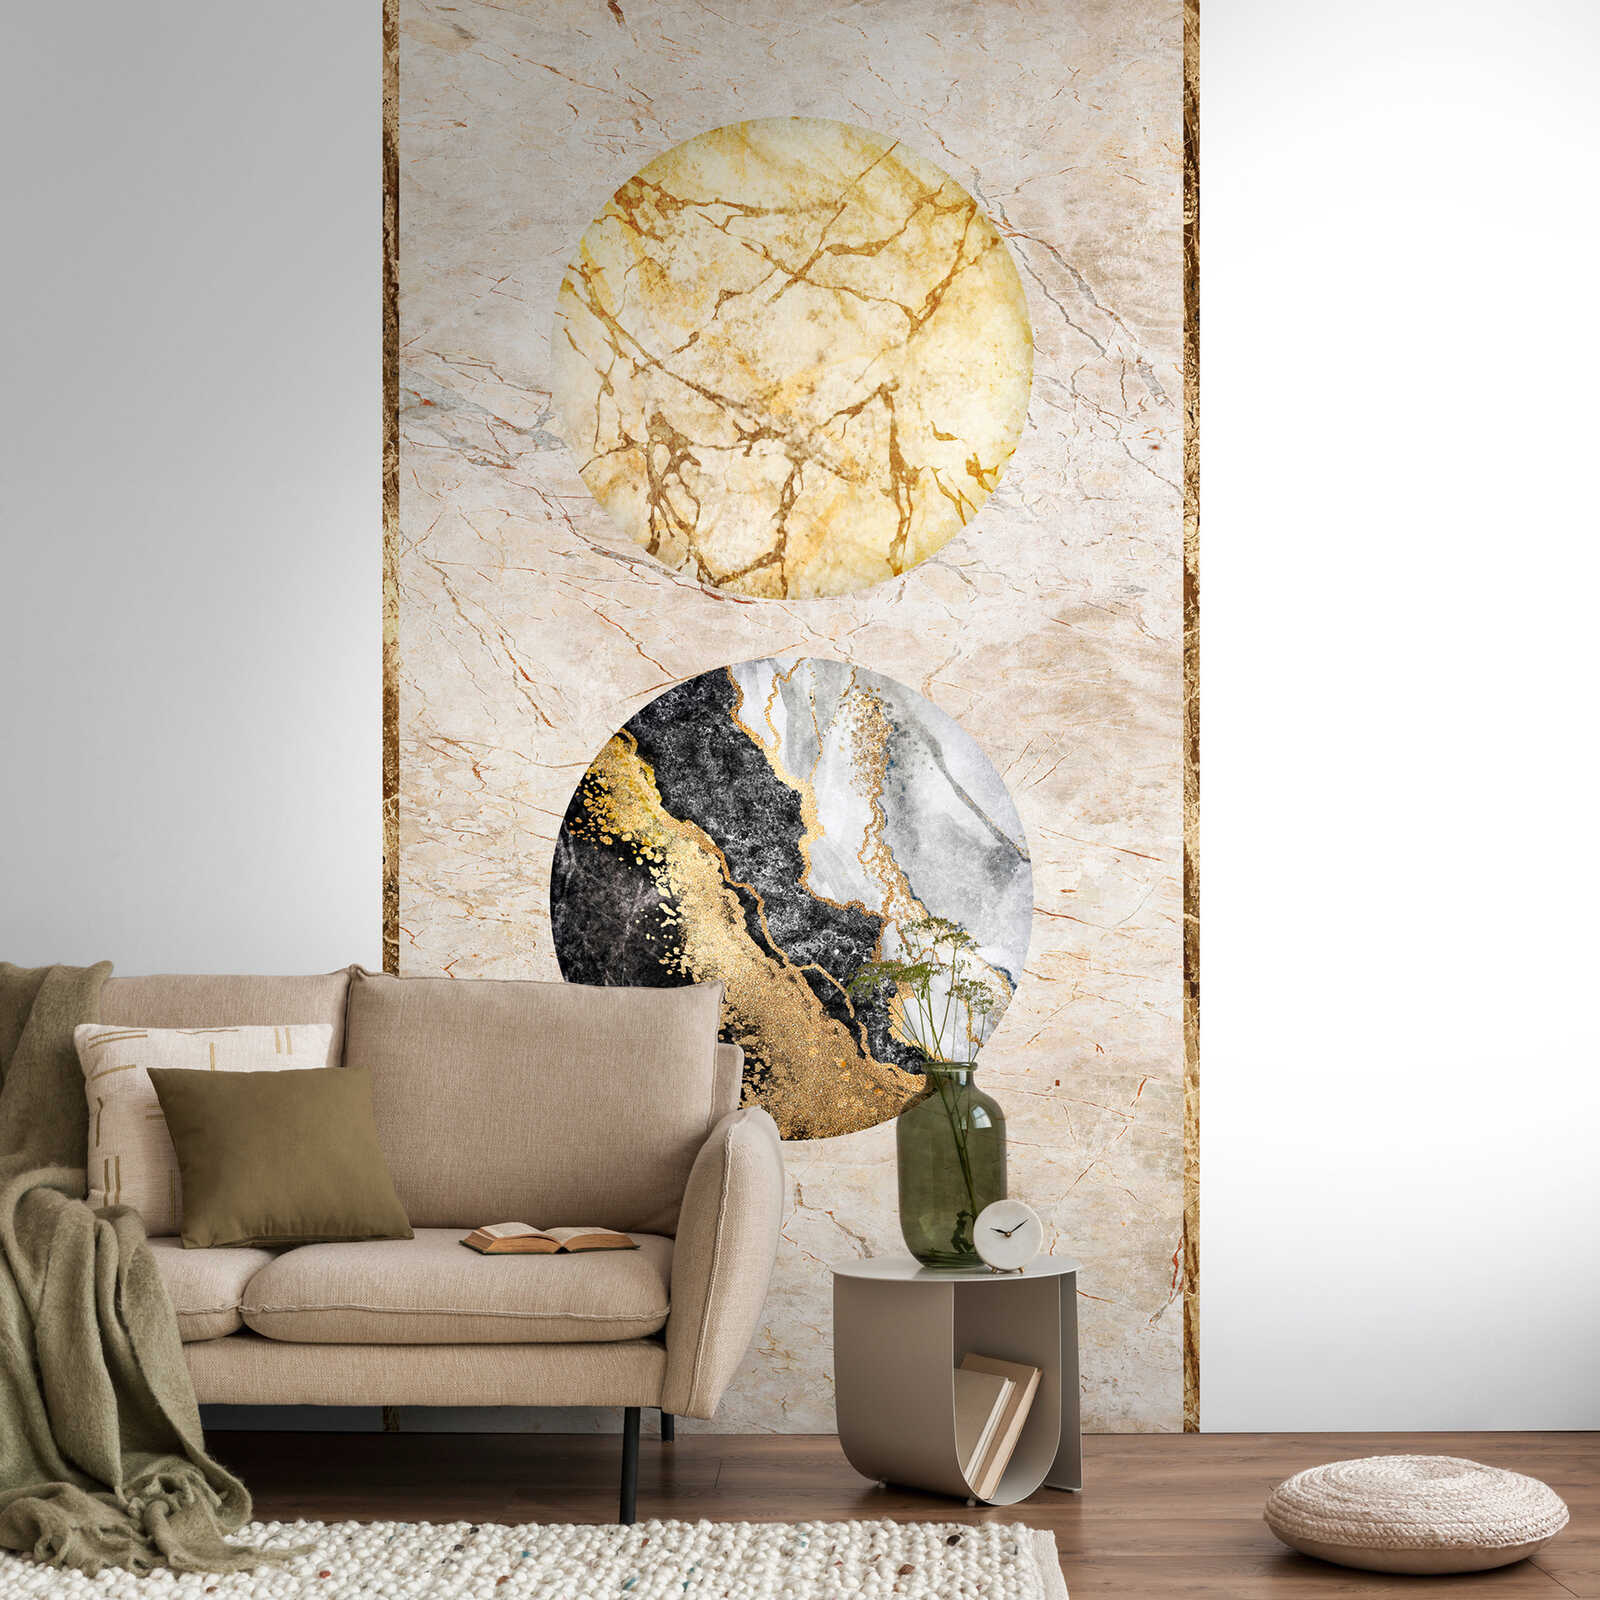         Luxuriöse Marmor Vliestapete mit Kreisen und goldenen Akzenten – Beige, Gold, Schwarz
    